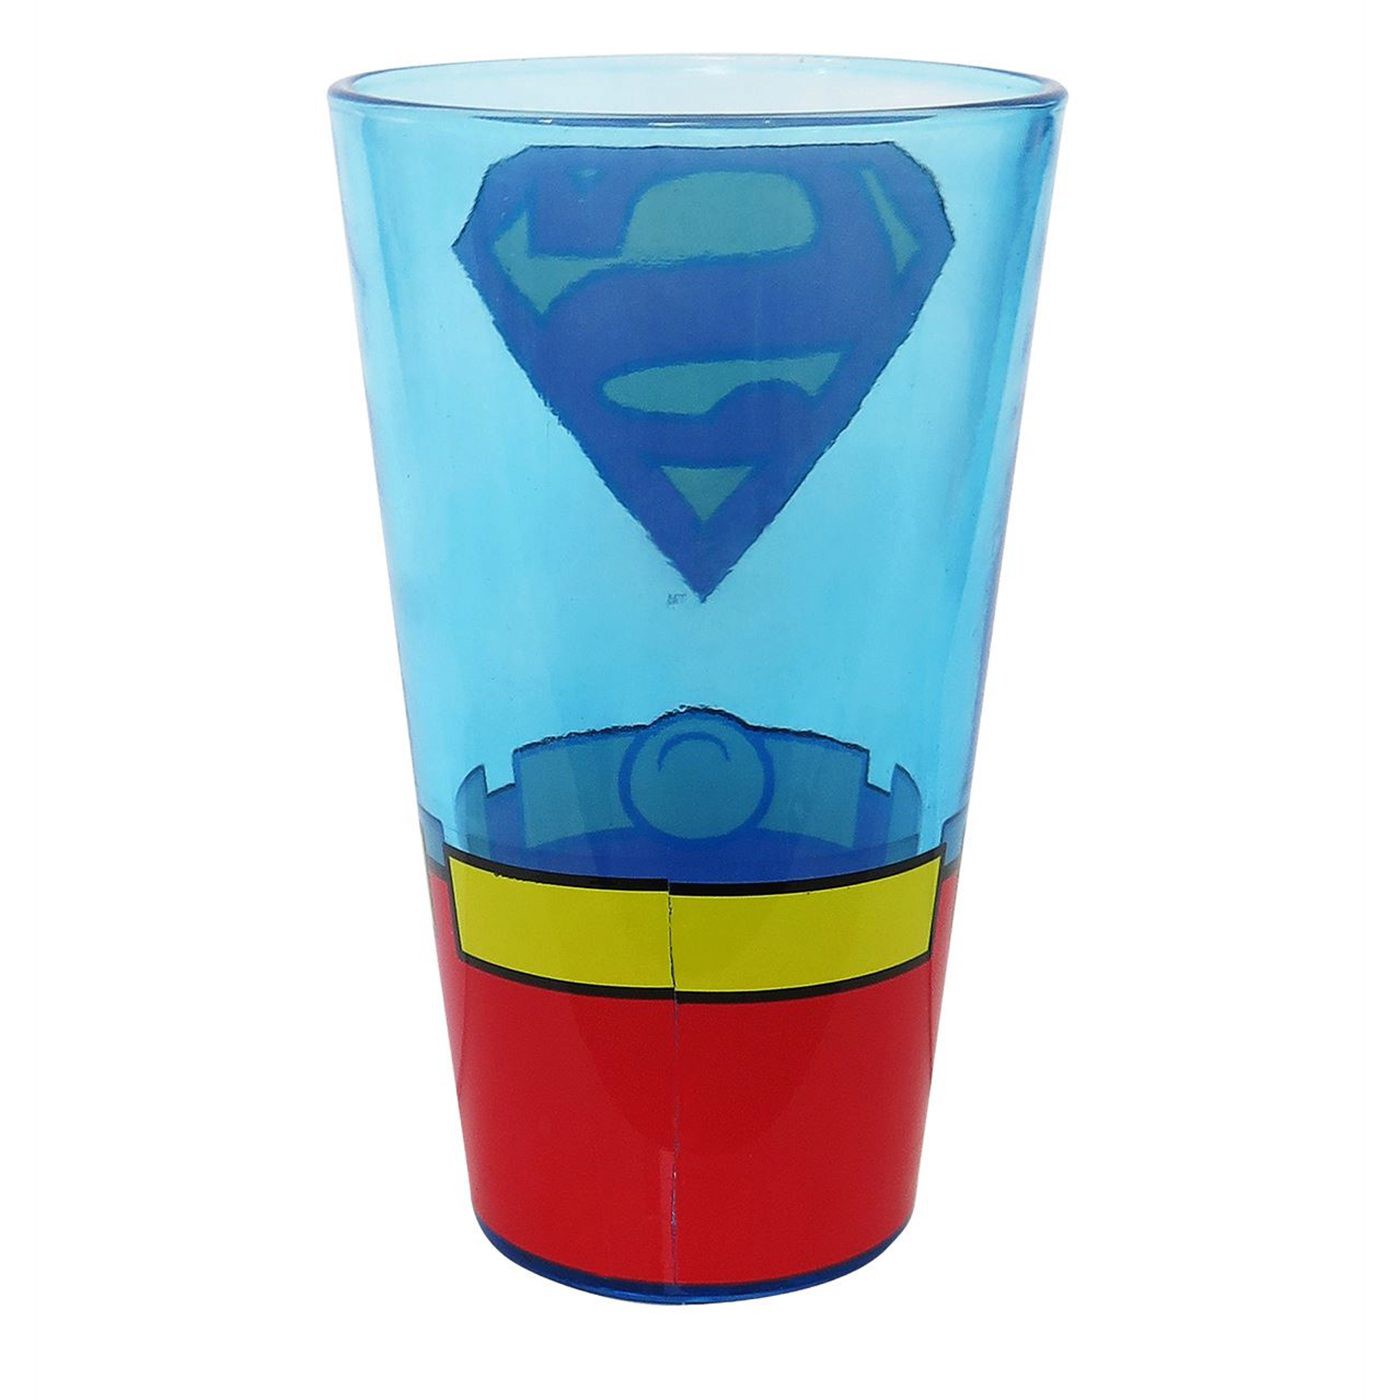 Superman Classic Costume Pint Glass